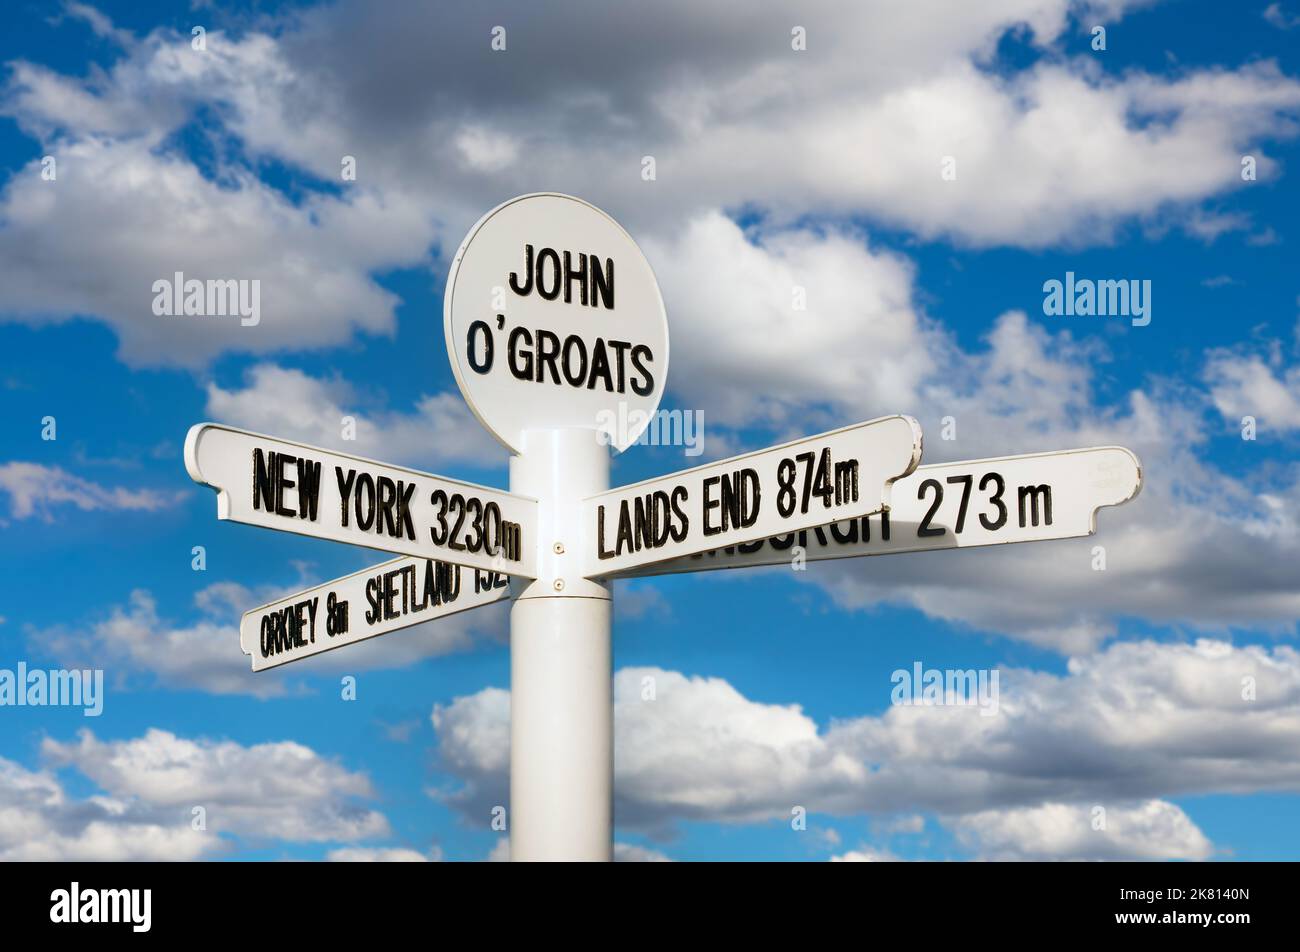 Le célèbre panneau de John O' Groats à Caithness, dans le nord de l'Écosse Banque D'Images